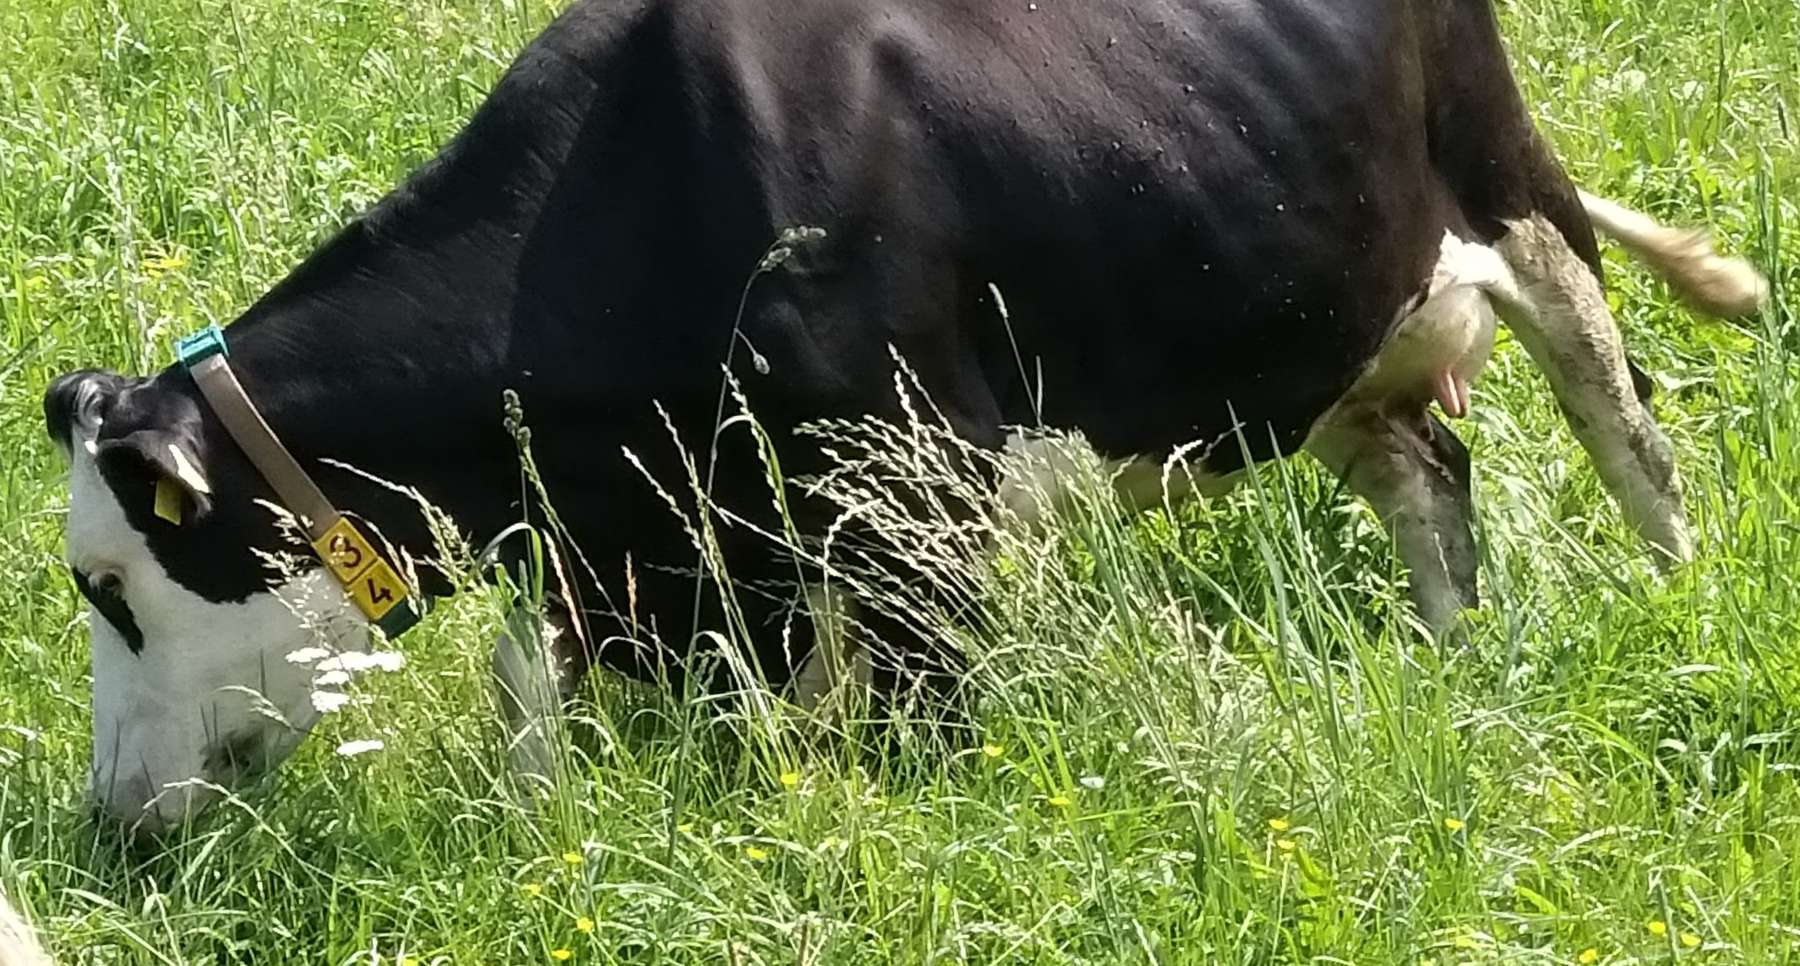 Rinder Lisette im Gras.jpg